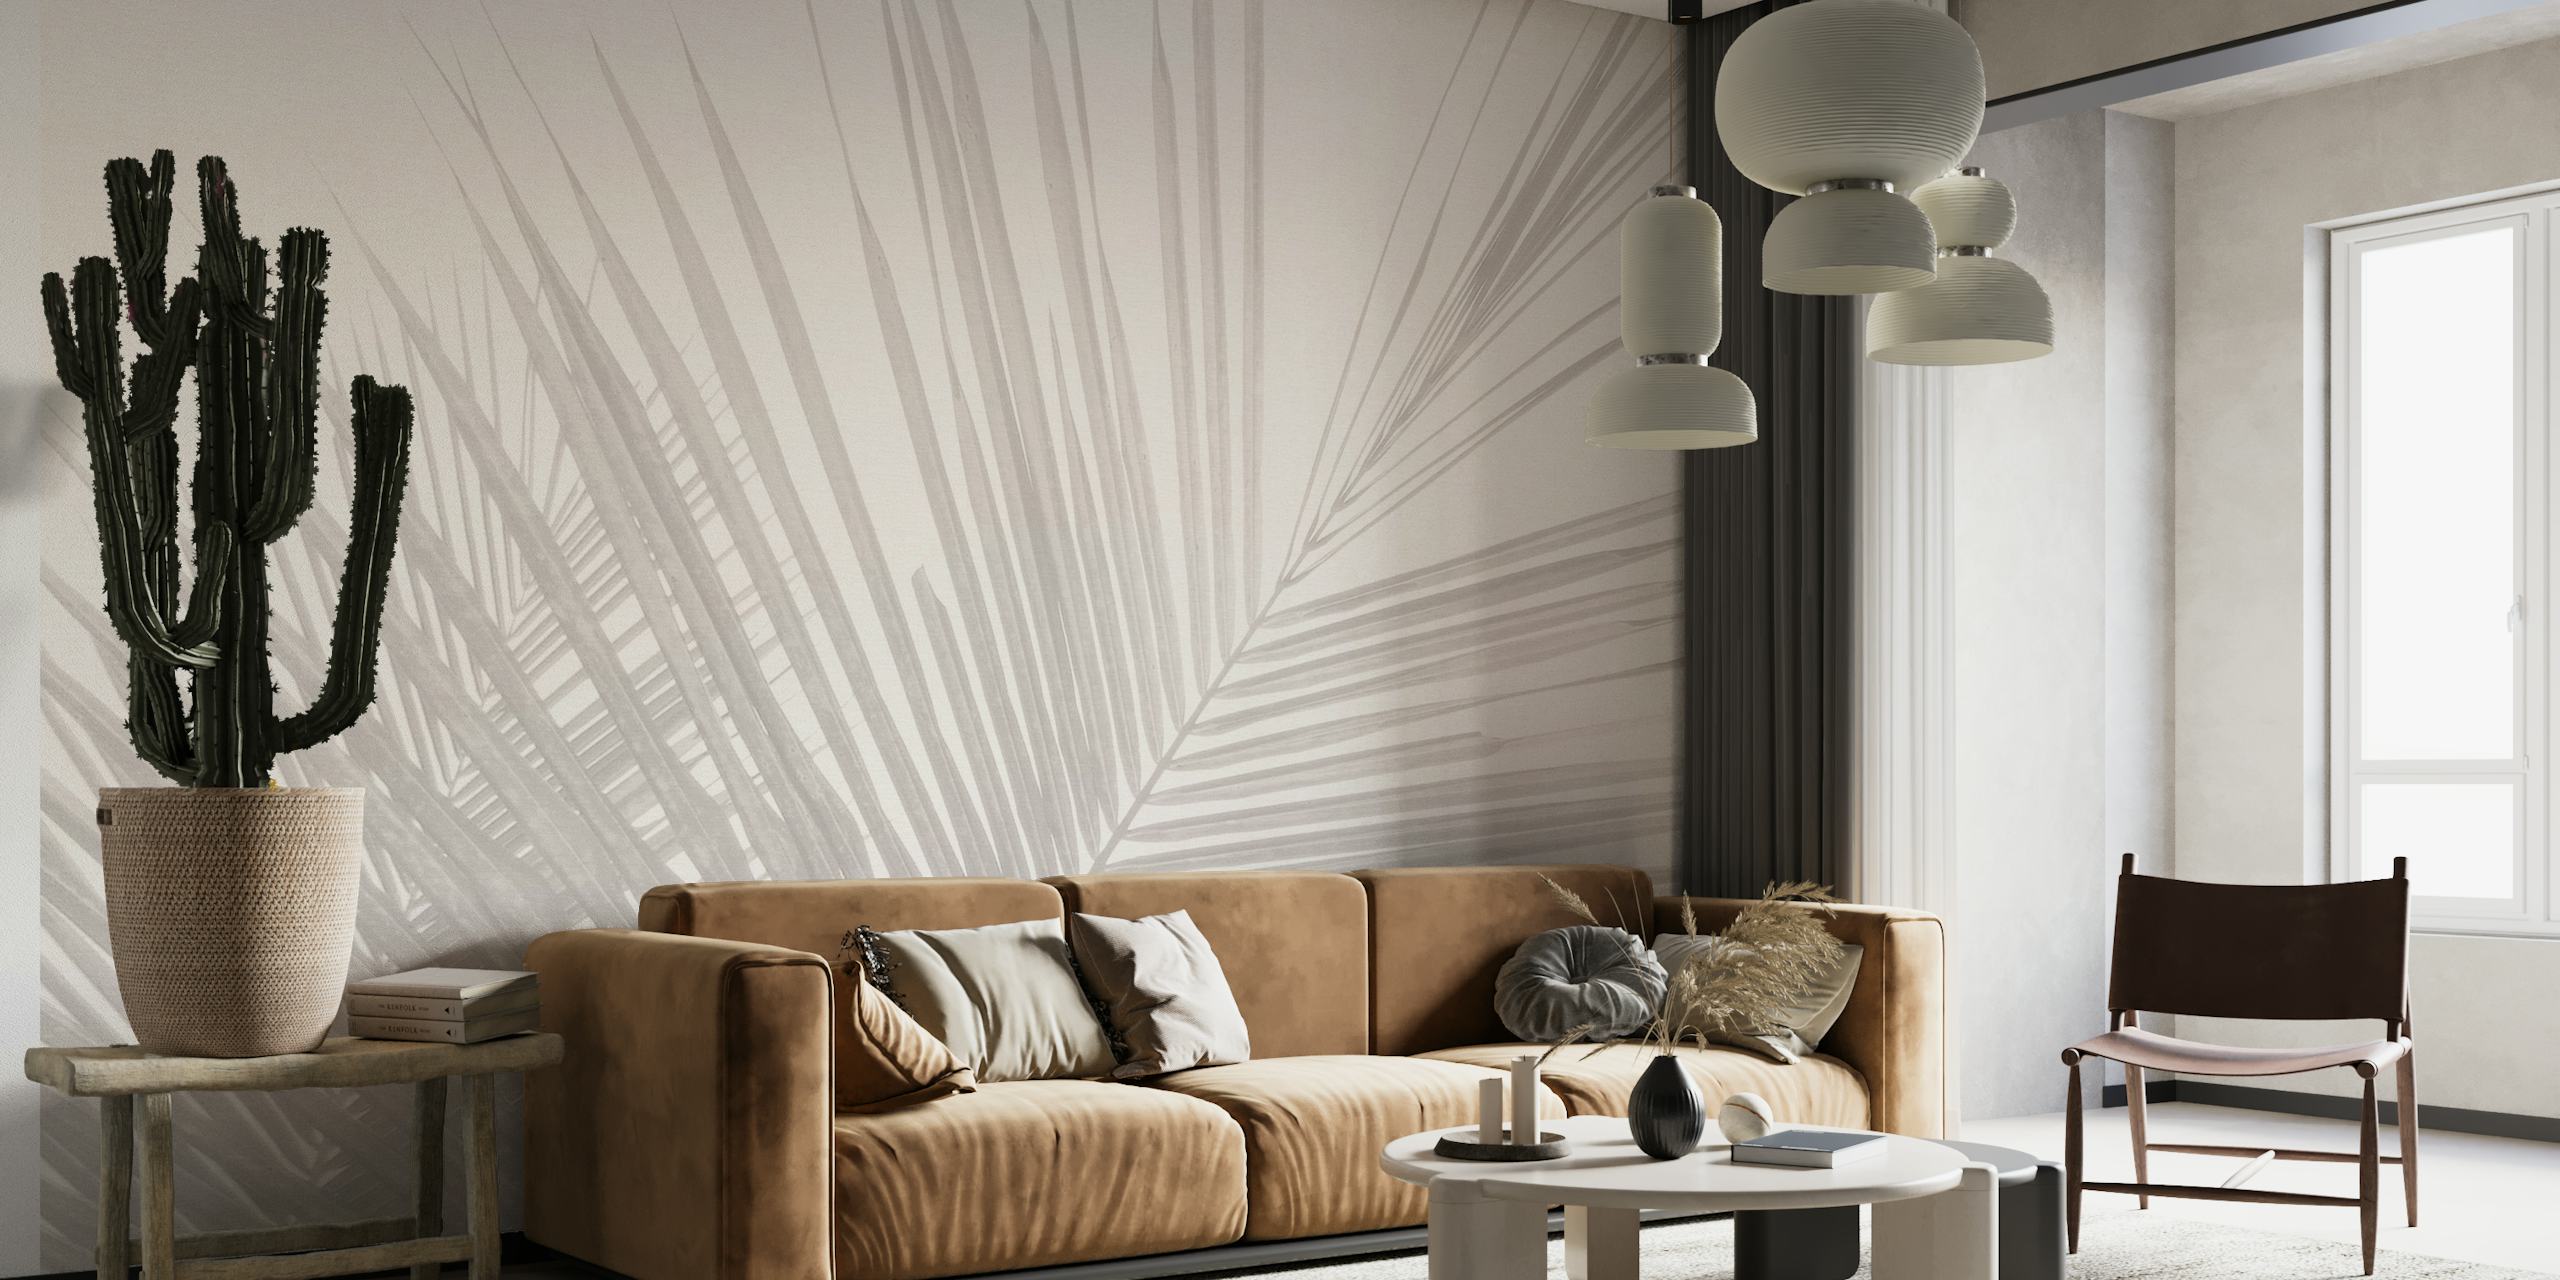 Soft tones tropical palm leaves  -Blush papiers peint